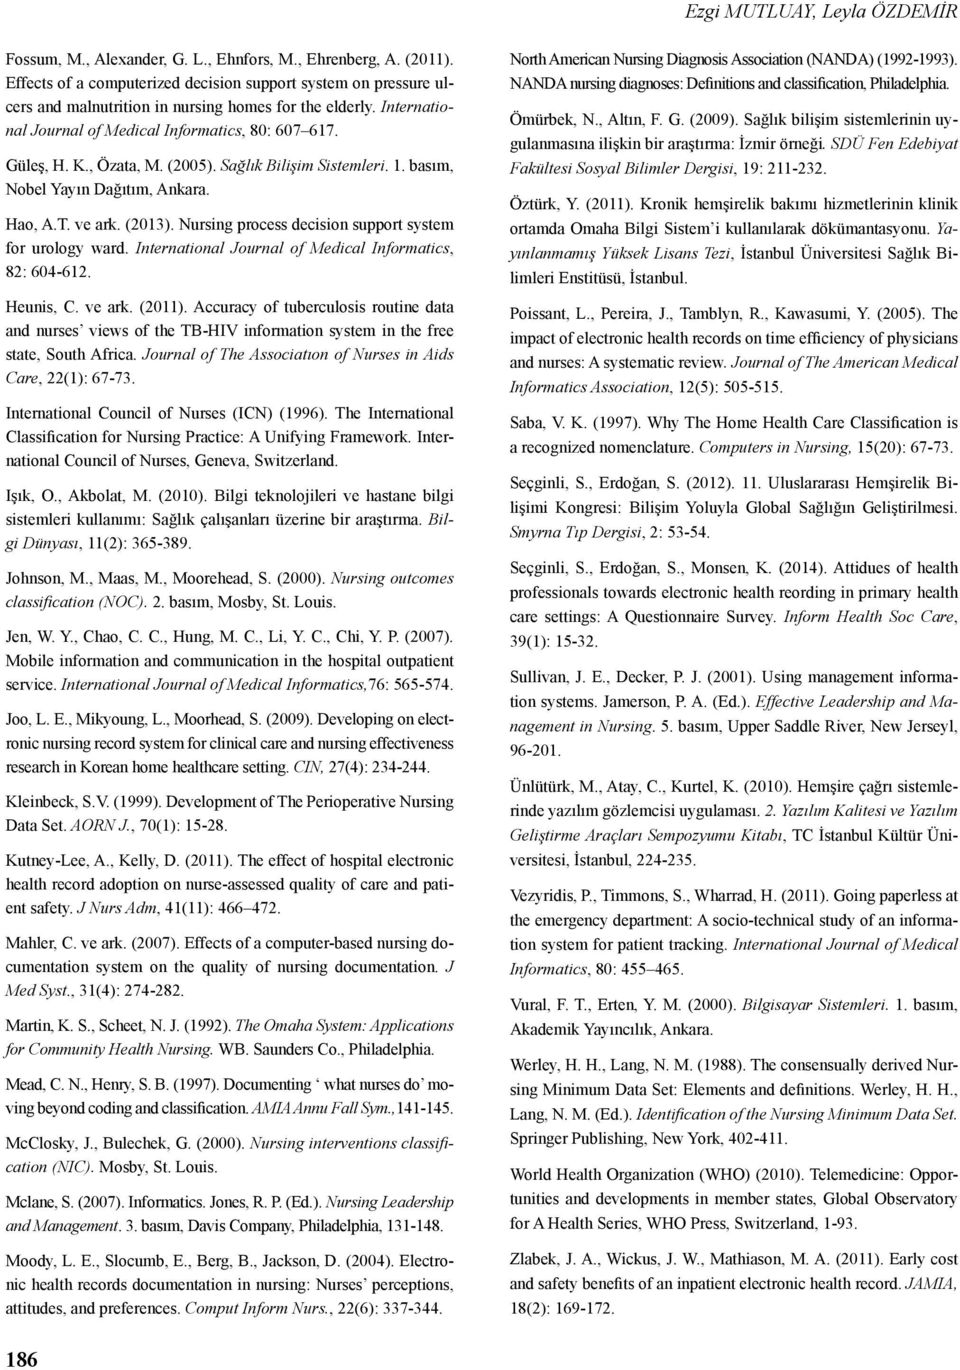 , Özata, M. (2005). Sağlık Bilişim Sistemleri. 1. basım, Nobel Yayın Dağıtım, Ankara. Hao, A.T. ve ark. (2013). Nursing process decision support system for urology ward.